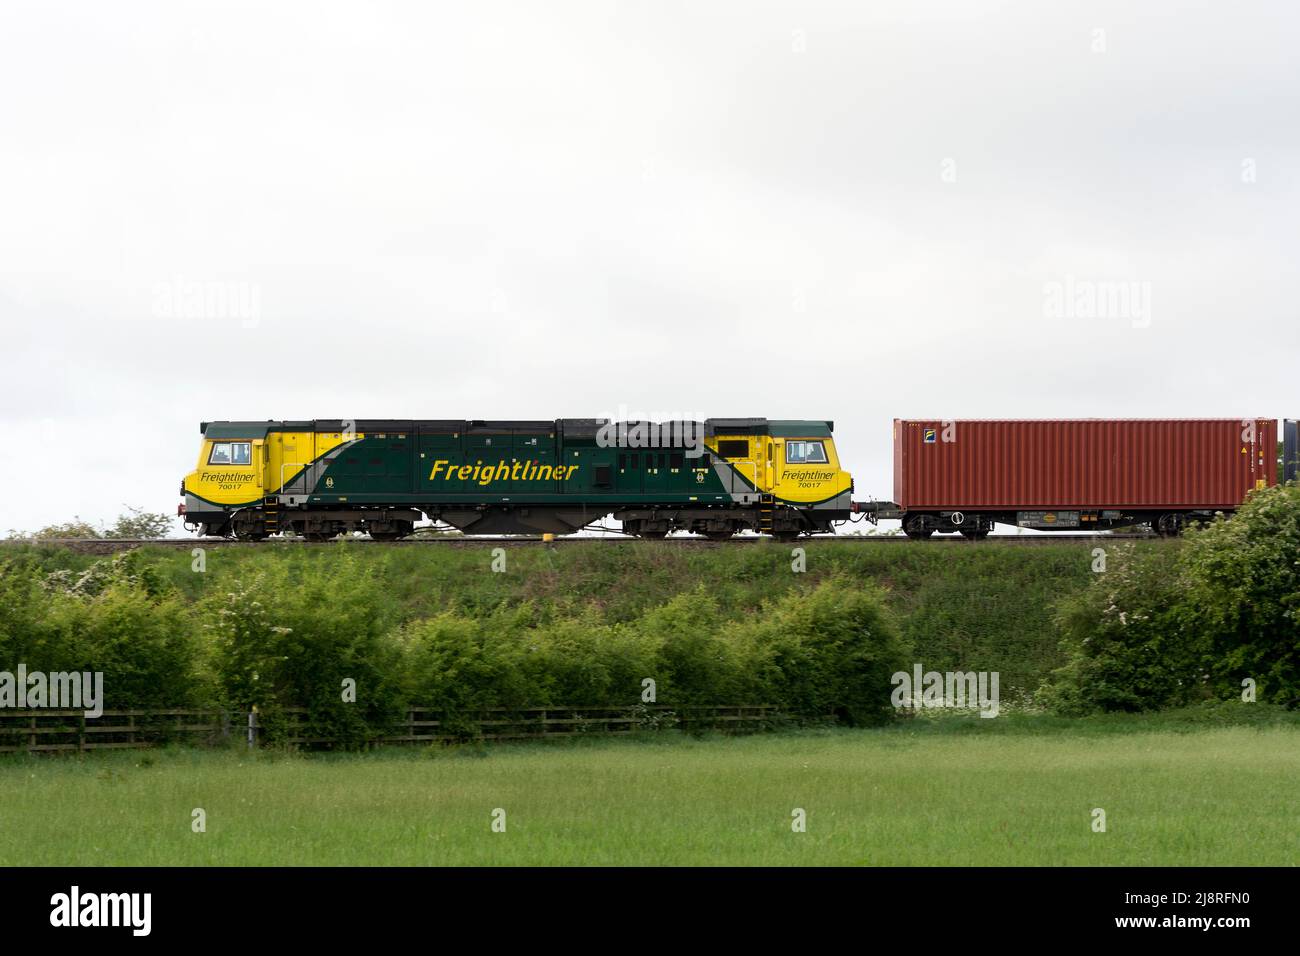 Eine Freightliner-Diesellokomotive der Baureihe 70 Nr. 70017 mit einem freightliner-Zug, Warwickshire, Großbritannien Stockfoto